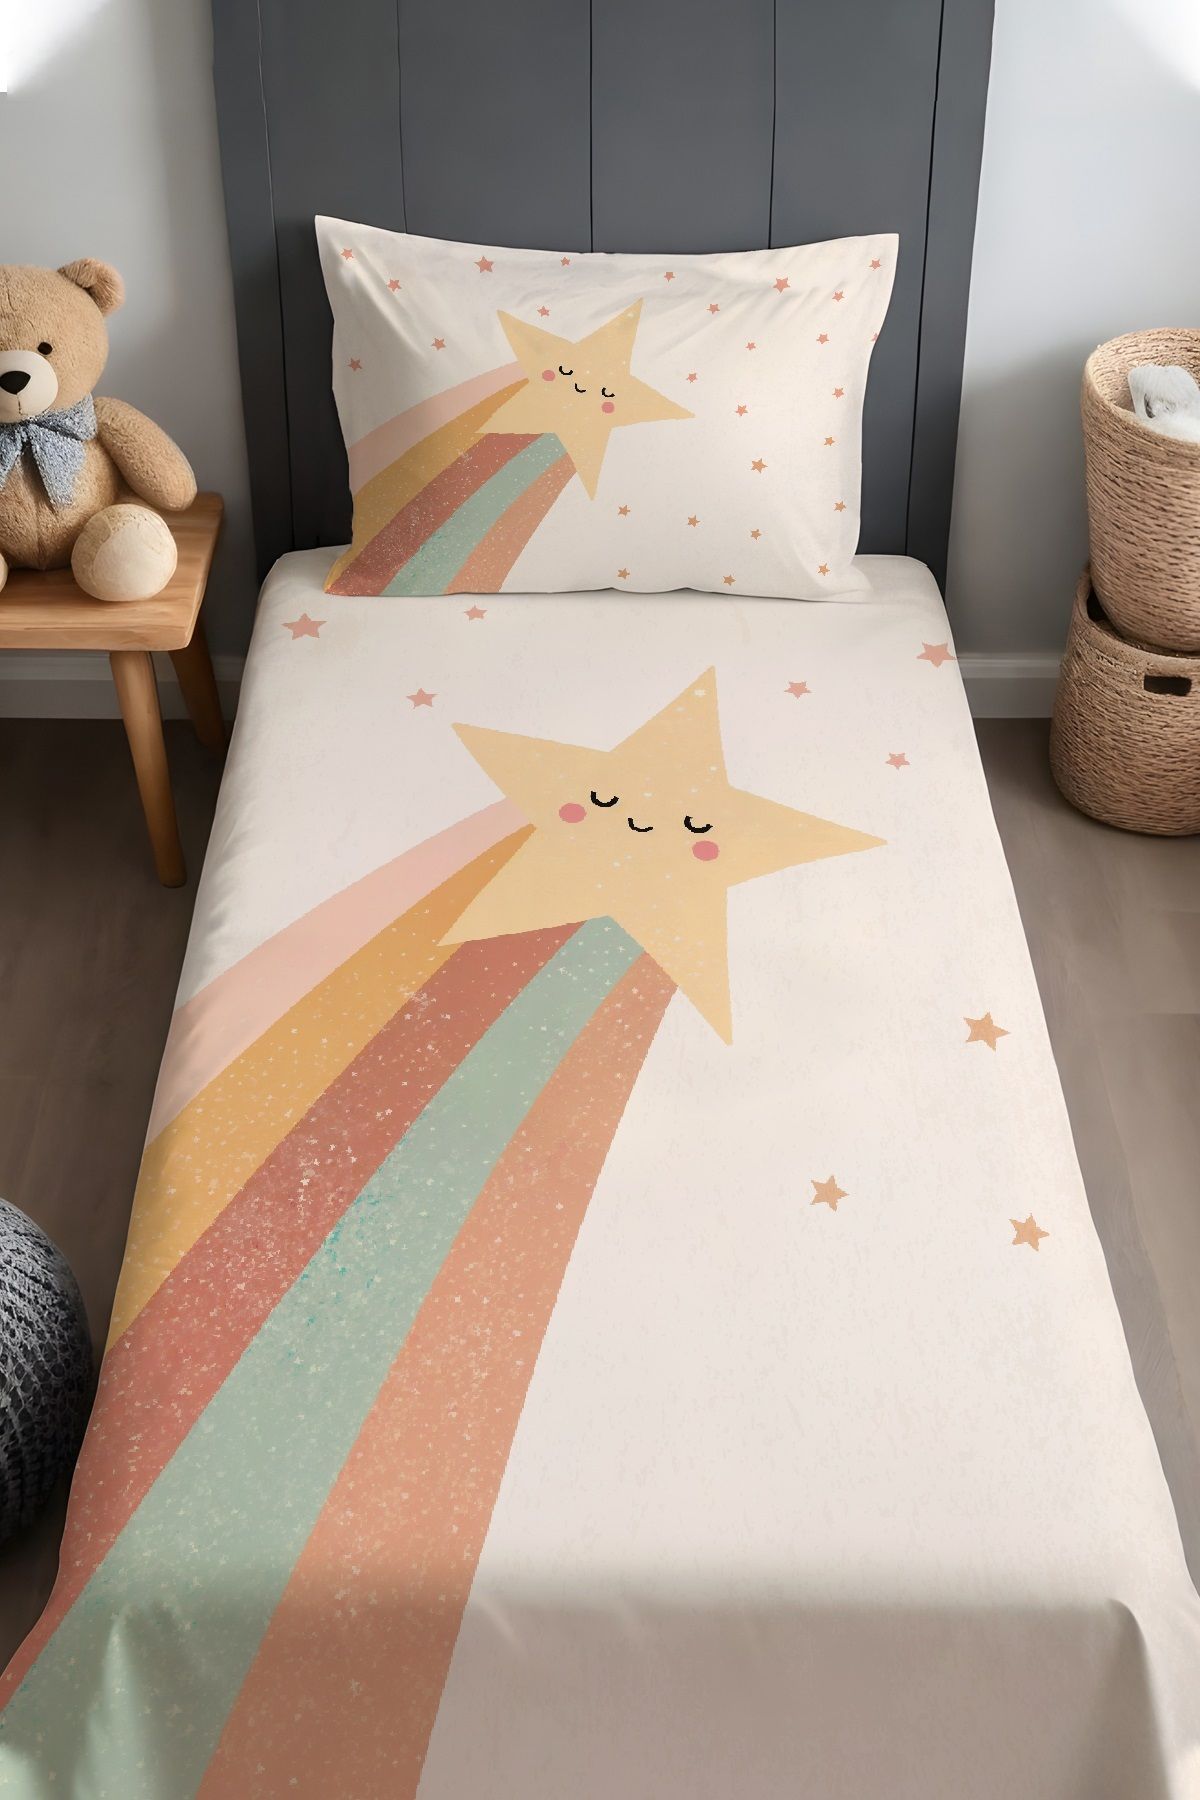 Evpanya Kayan Yıldız Desenli Yatak Örtüsü ve Yastık Kılıfı